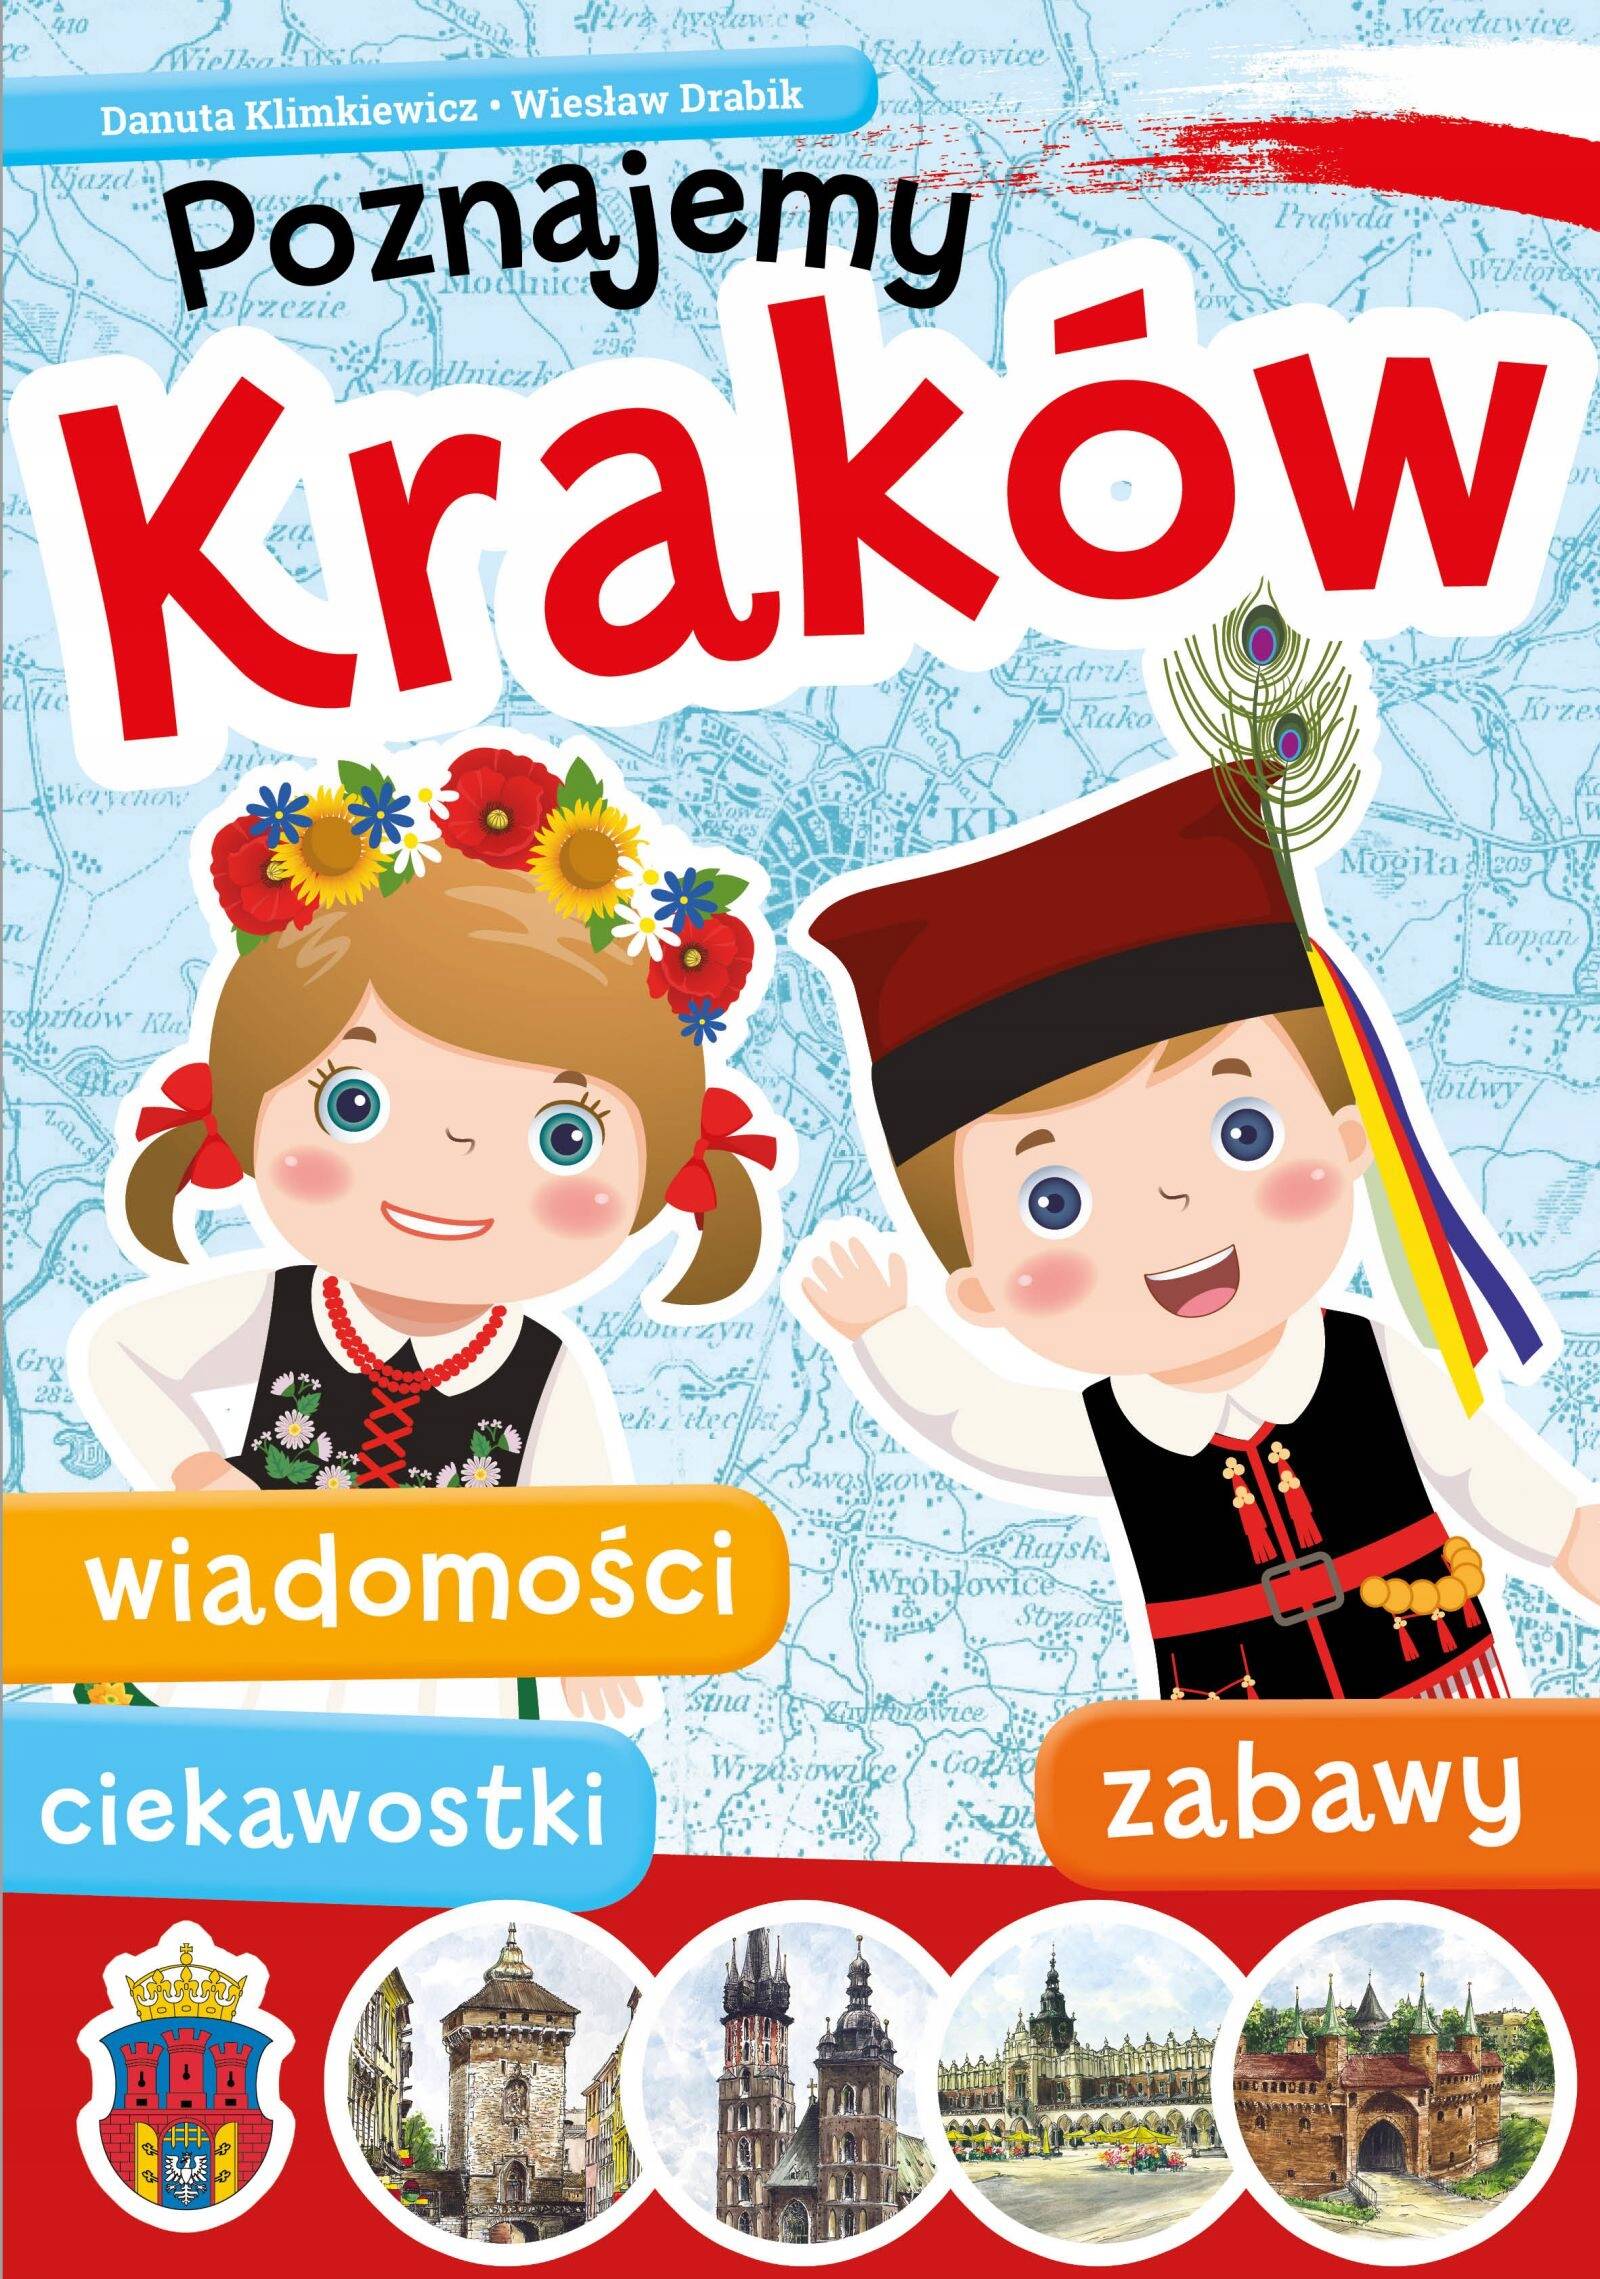 Poznajemy Kraków Eduprzewodnik Danuta Klimkiewicz Wiesław Drabik 6+ Skrzat_1